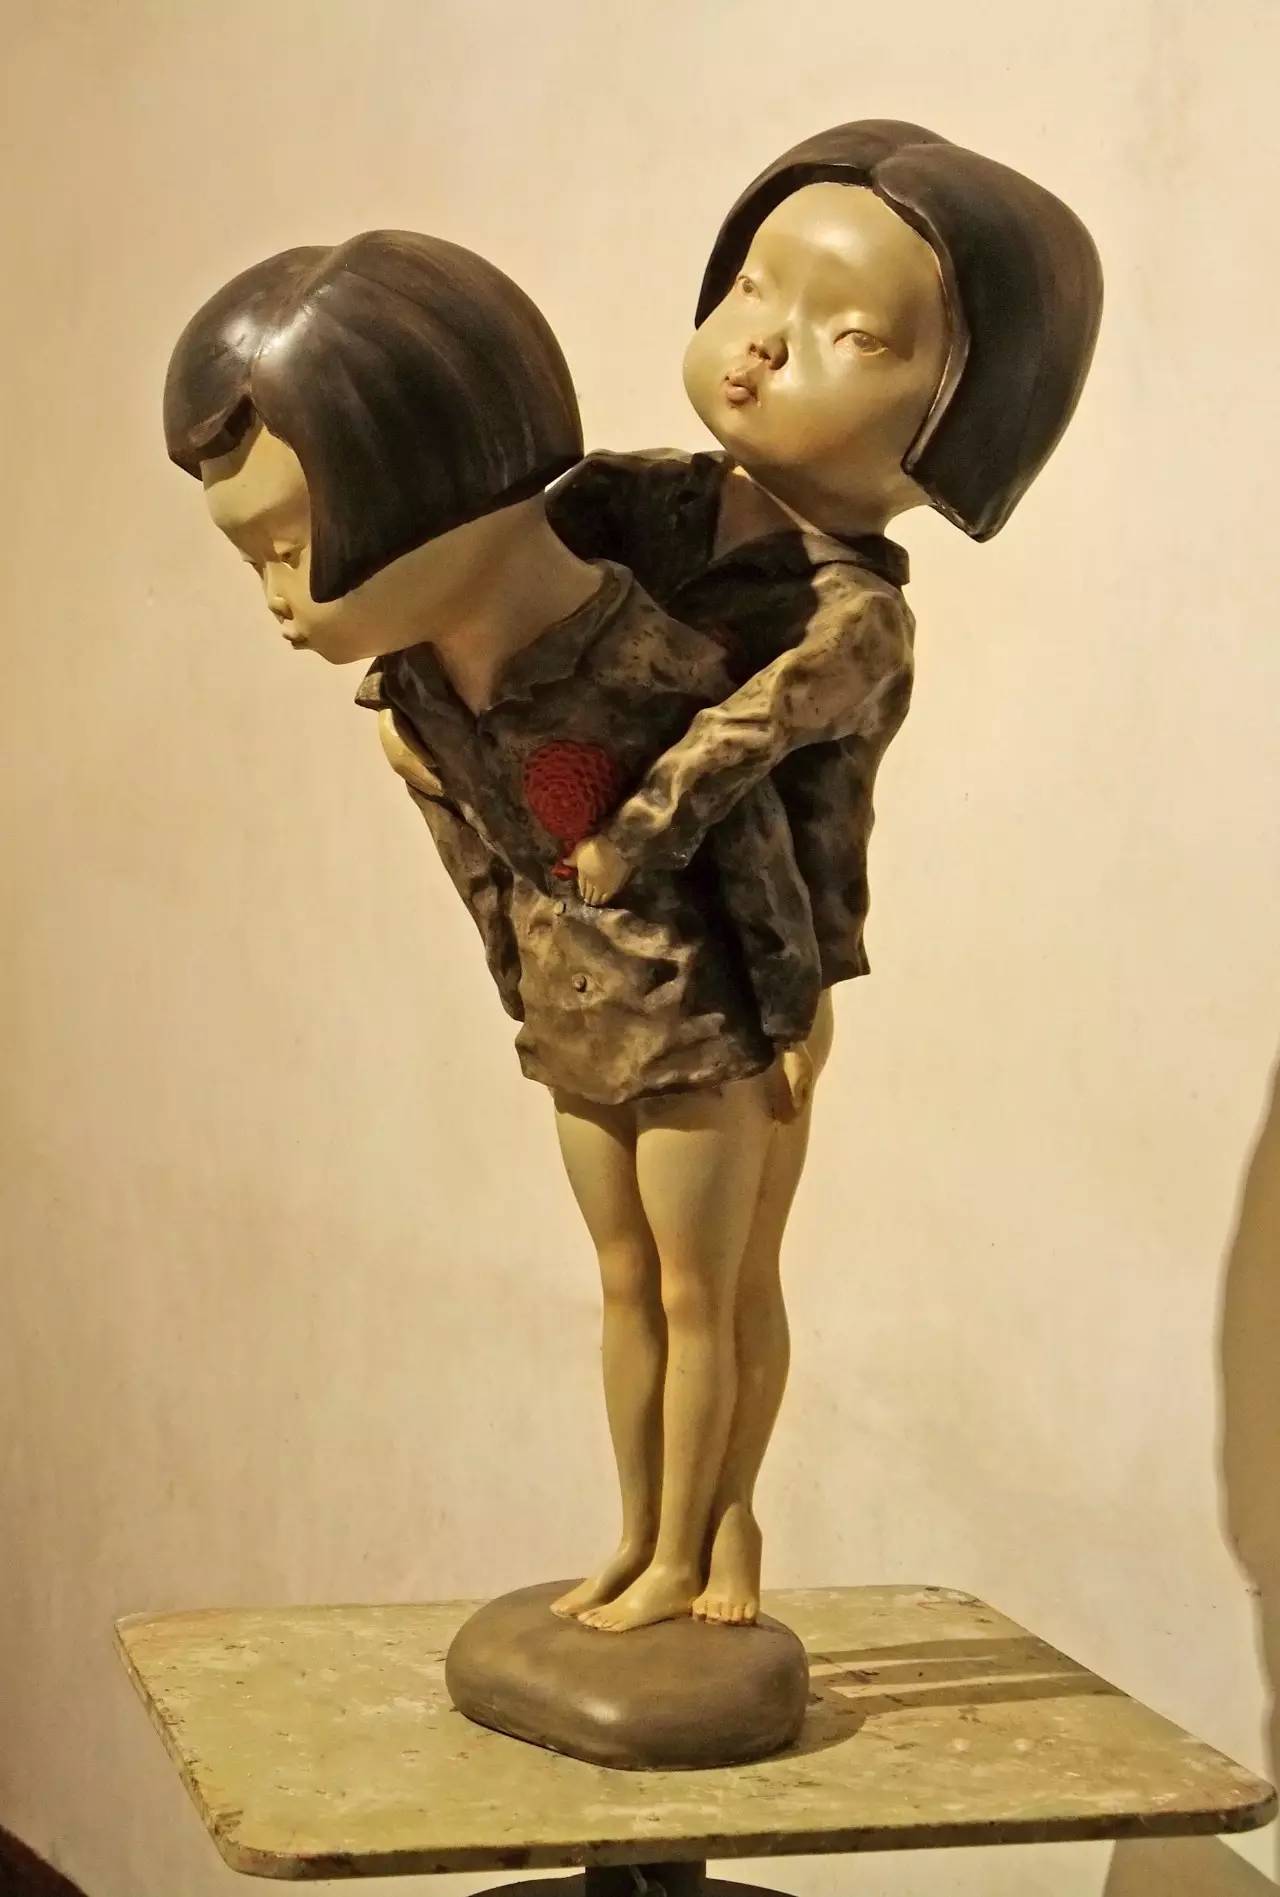 中国青年雕塑艺术家董明光